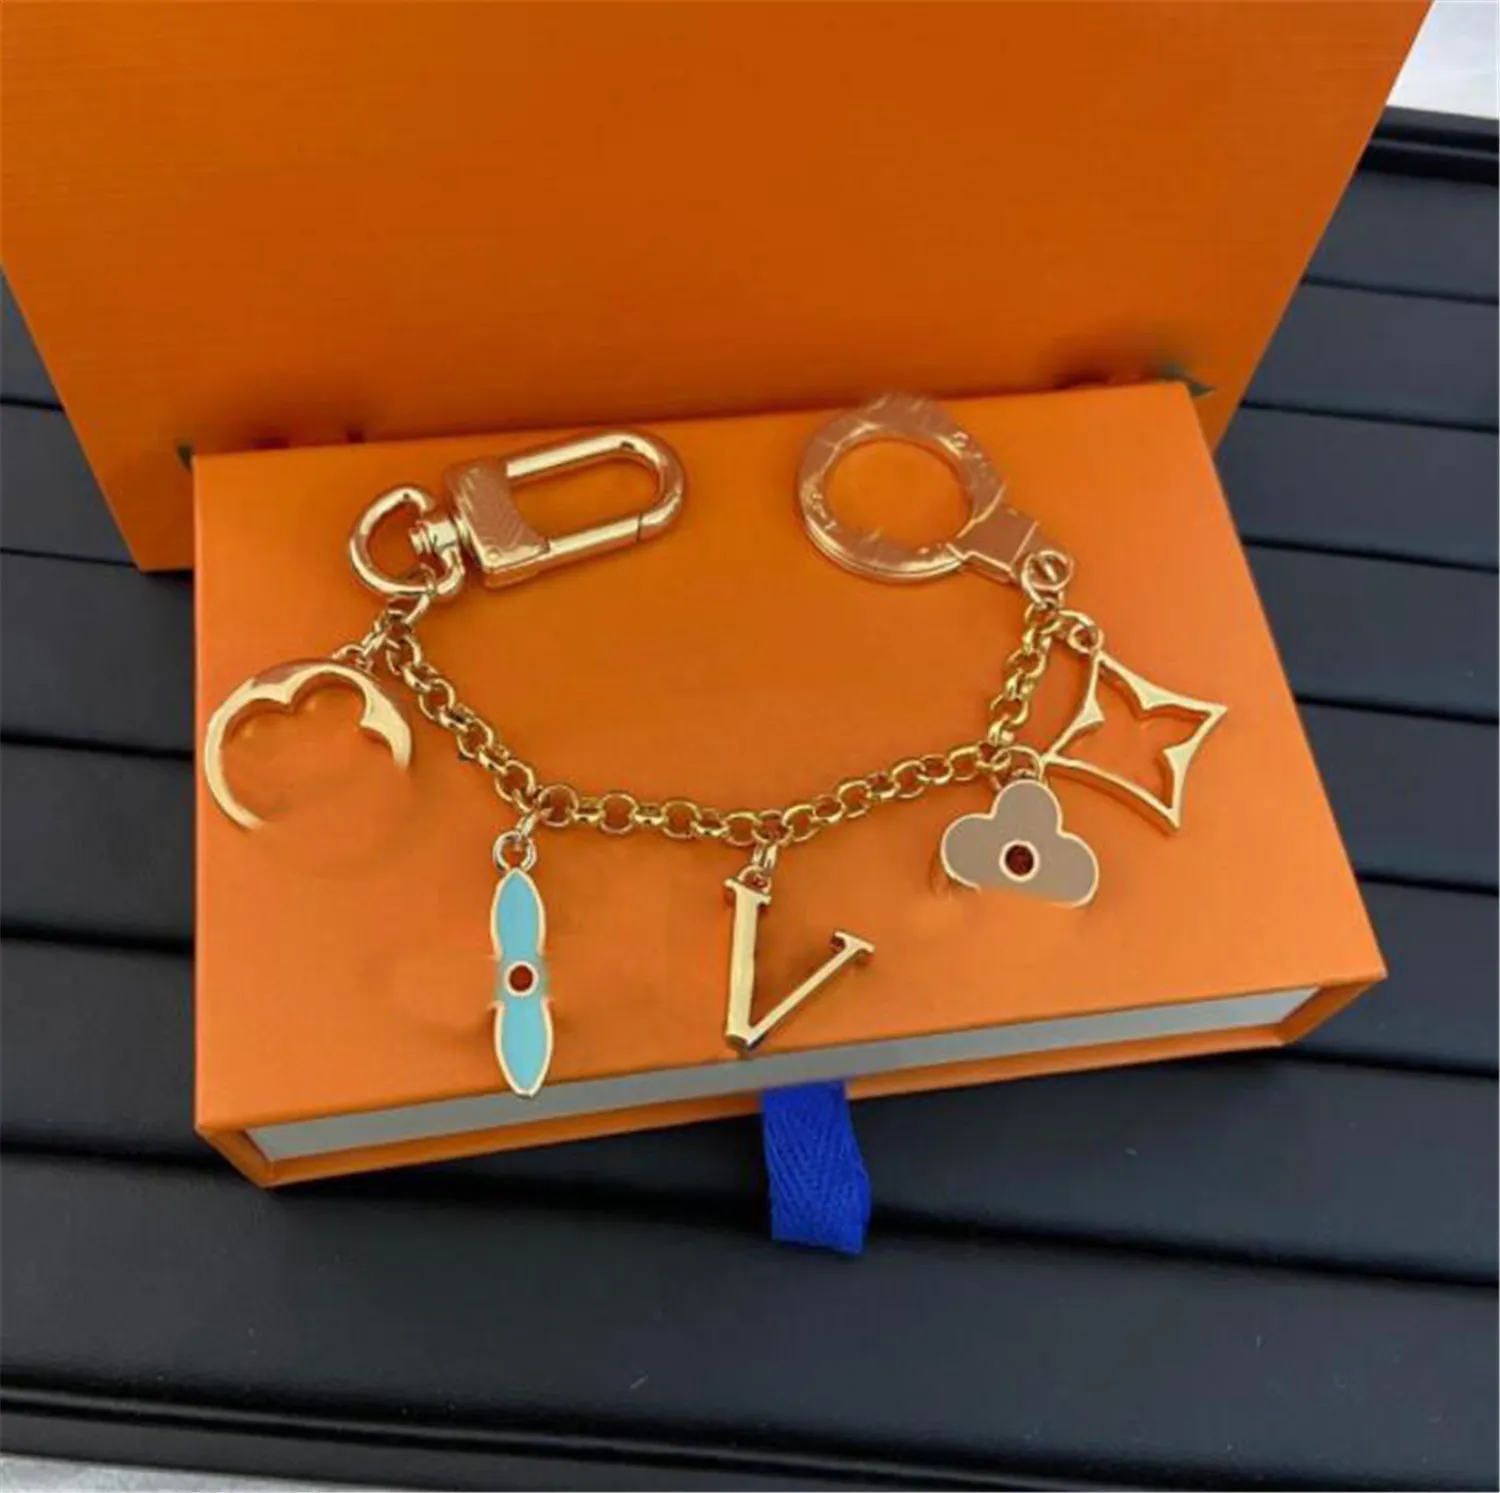 Lüks Tasarımcı Keychain Marka Anahtar Zinciri Erkekler Araba Knah Delici Kadın Toka Anahtarları Çanta Kolye Güvercini Kutu Toz çantası